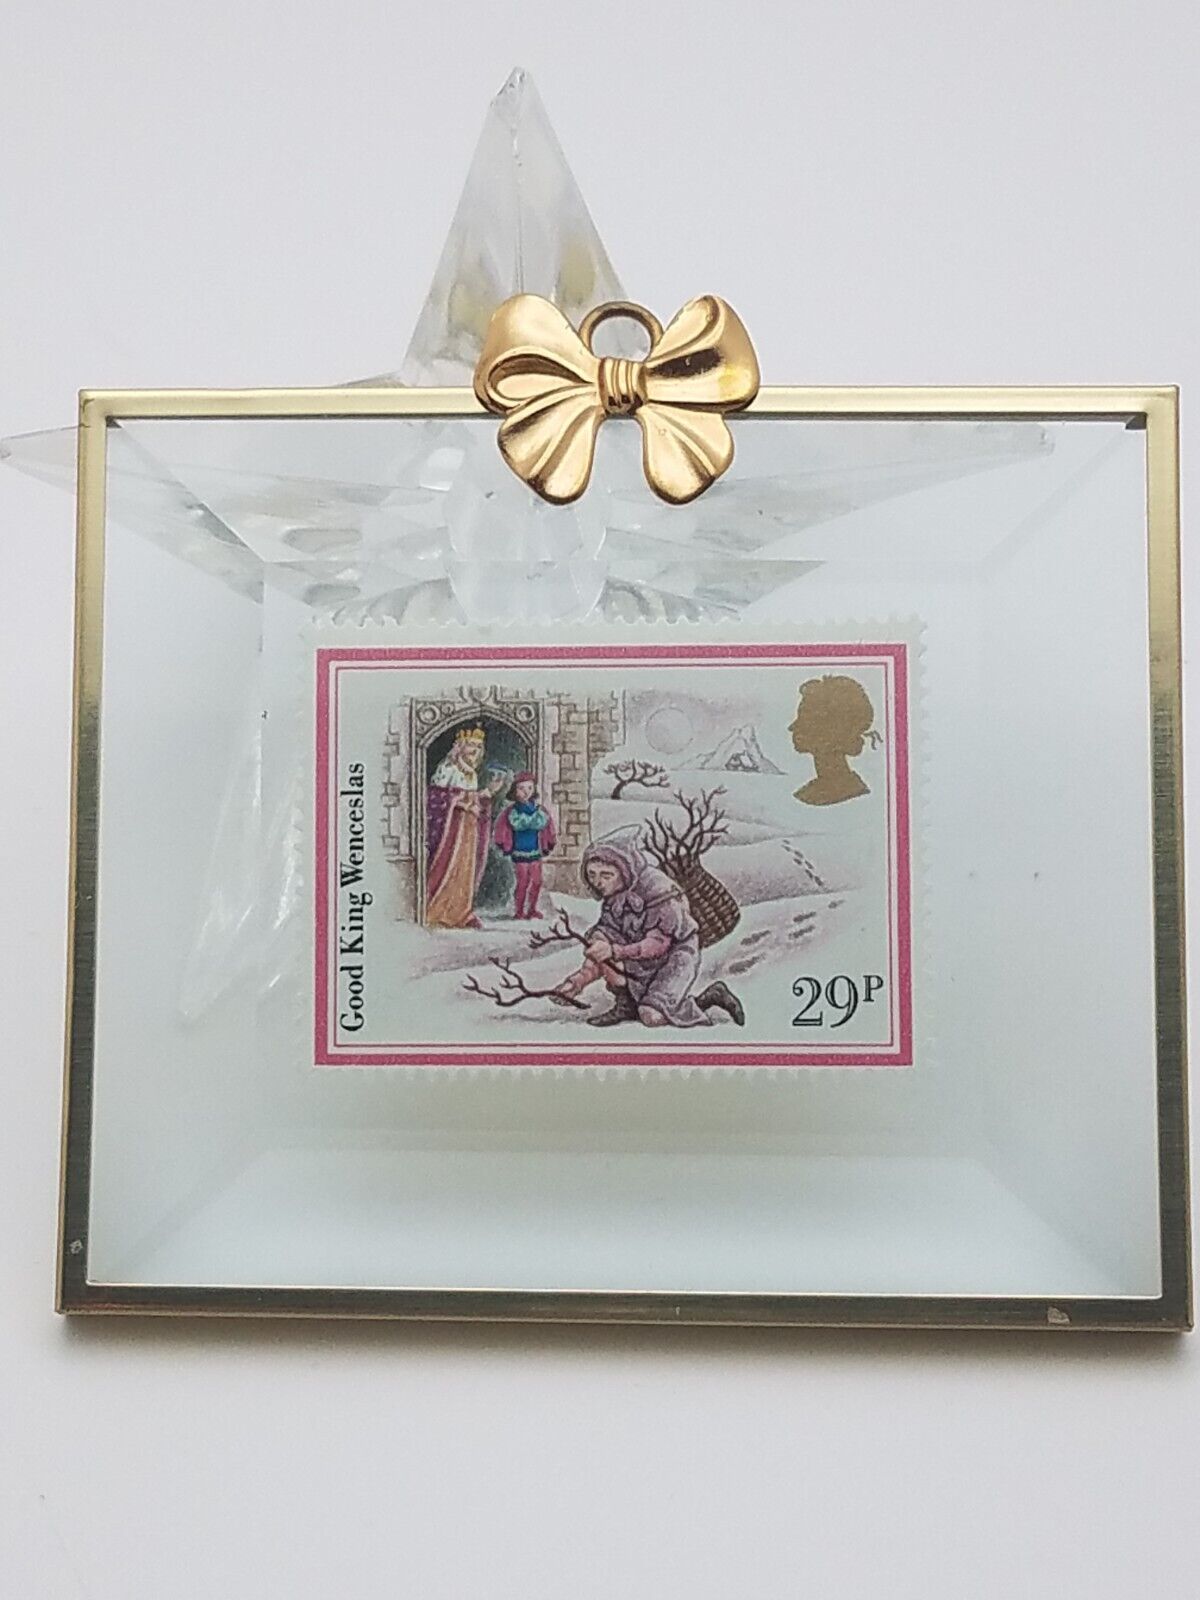 Hanford Heirlooms 1988 Good King Wencelas 29p  Framed Postage Stamp